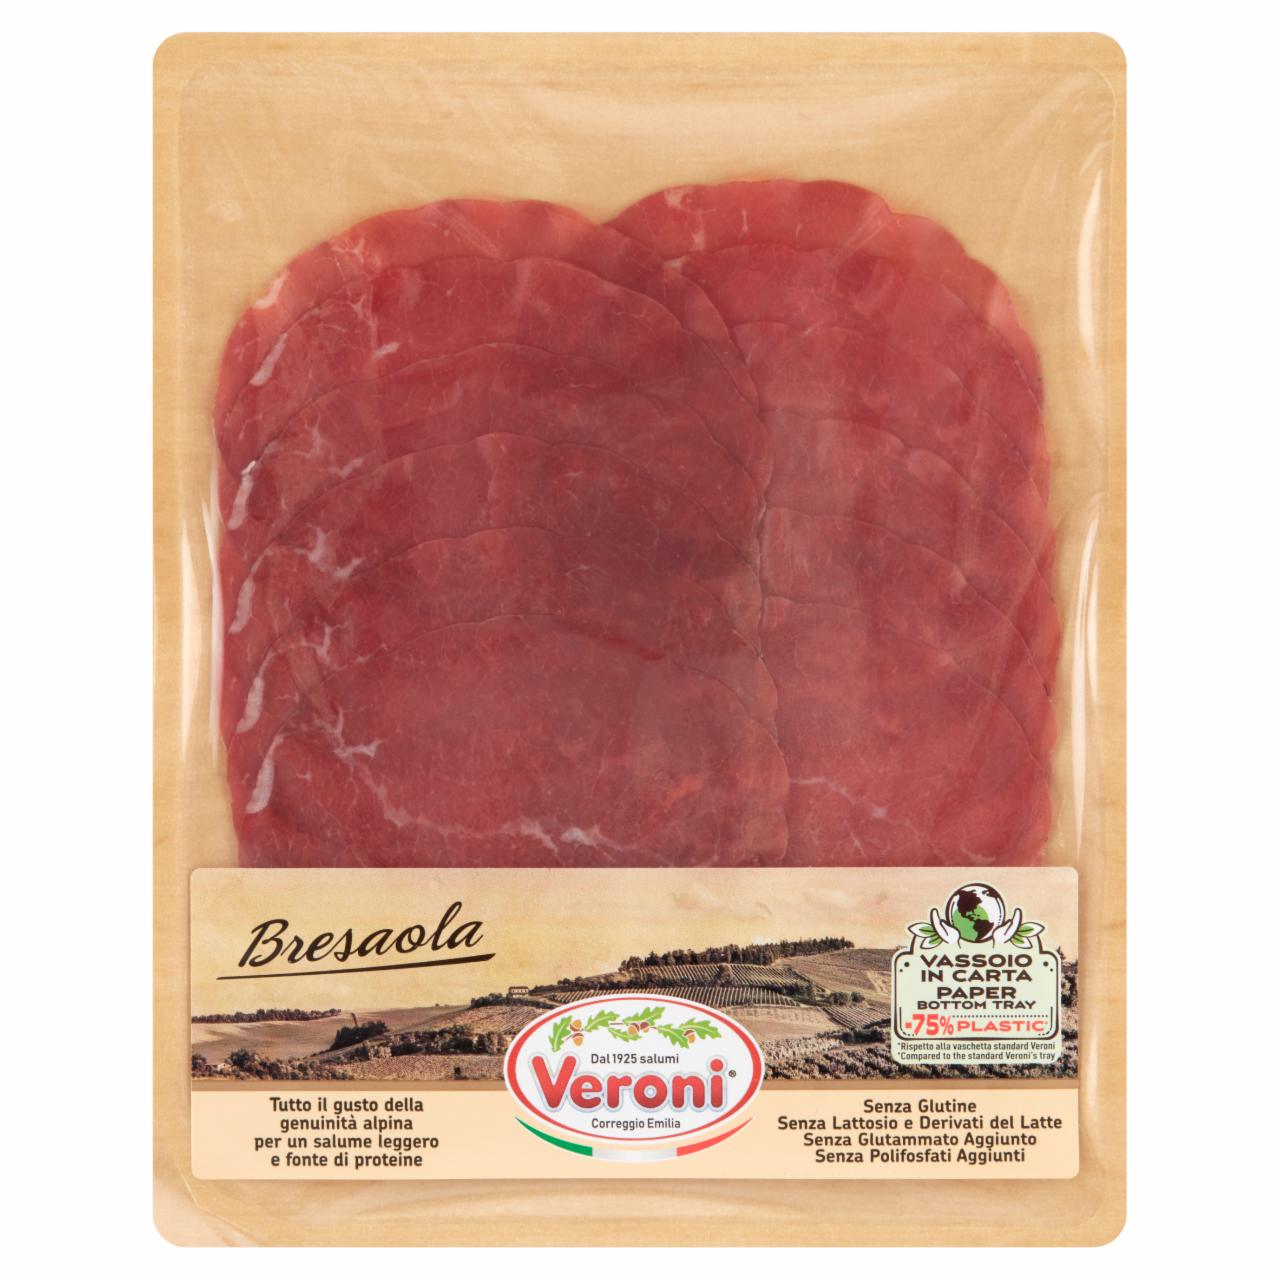 Zdjęcia - Veroni Bresaola Produkt wołowy 0,070 kg